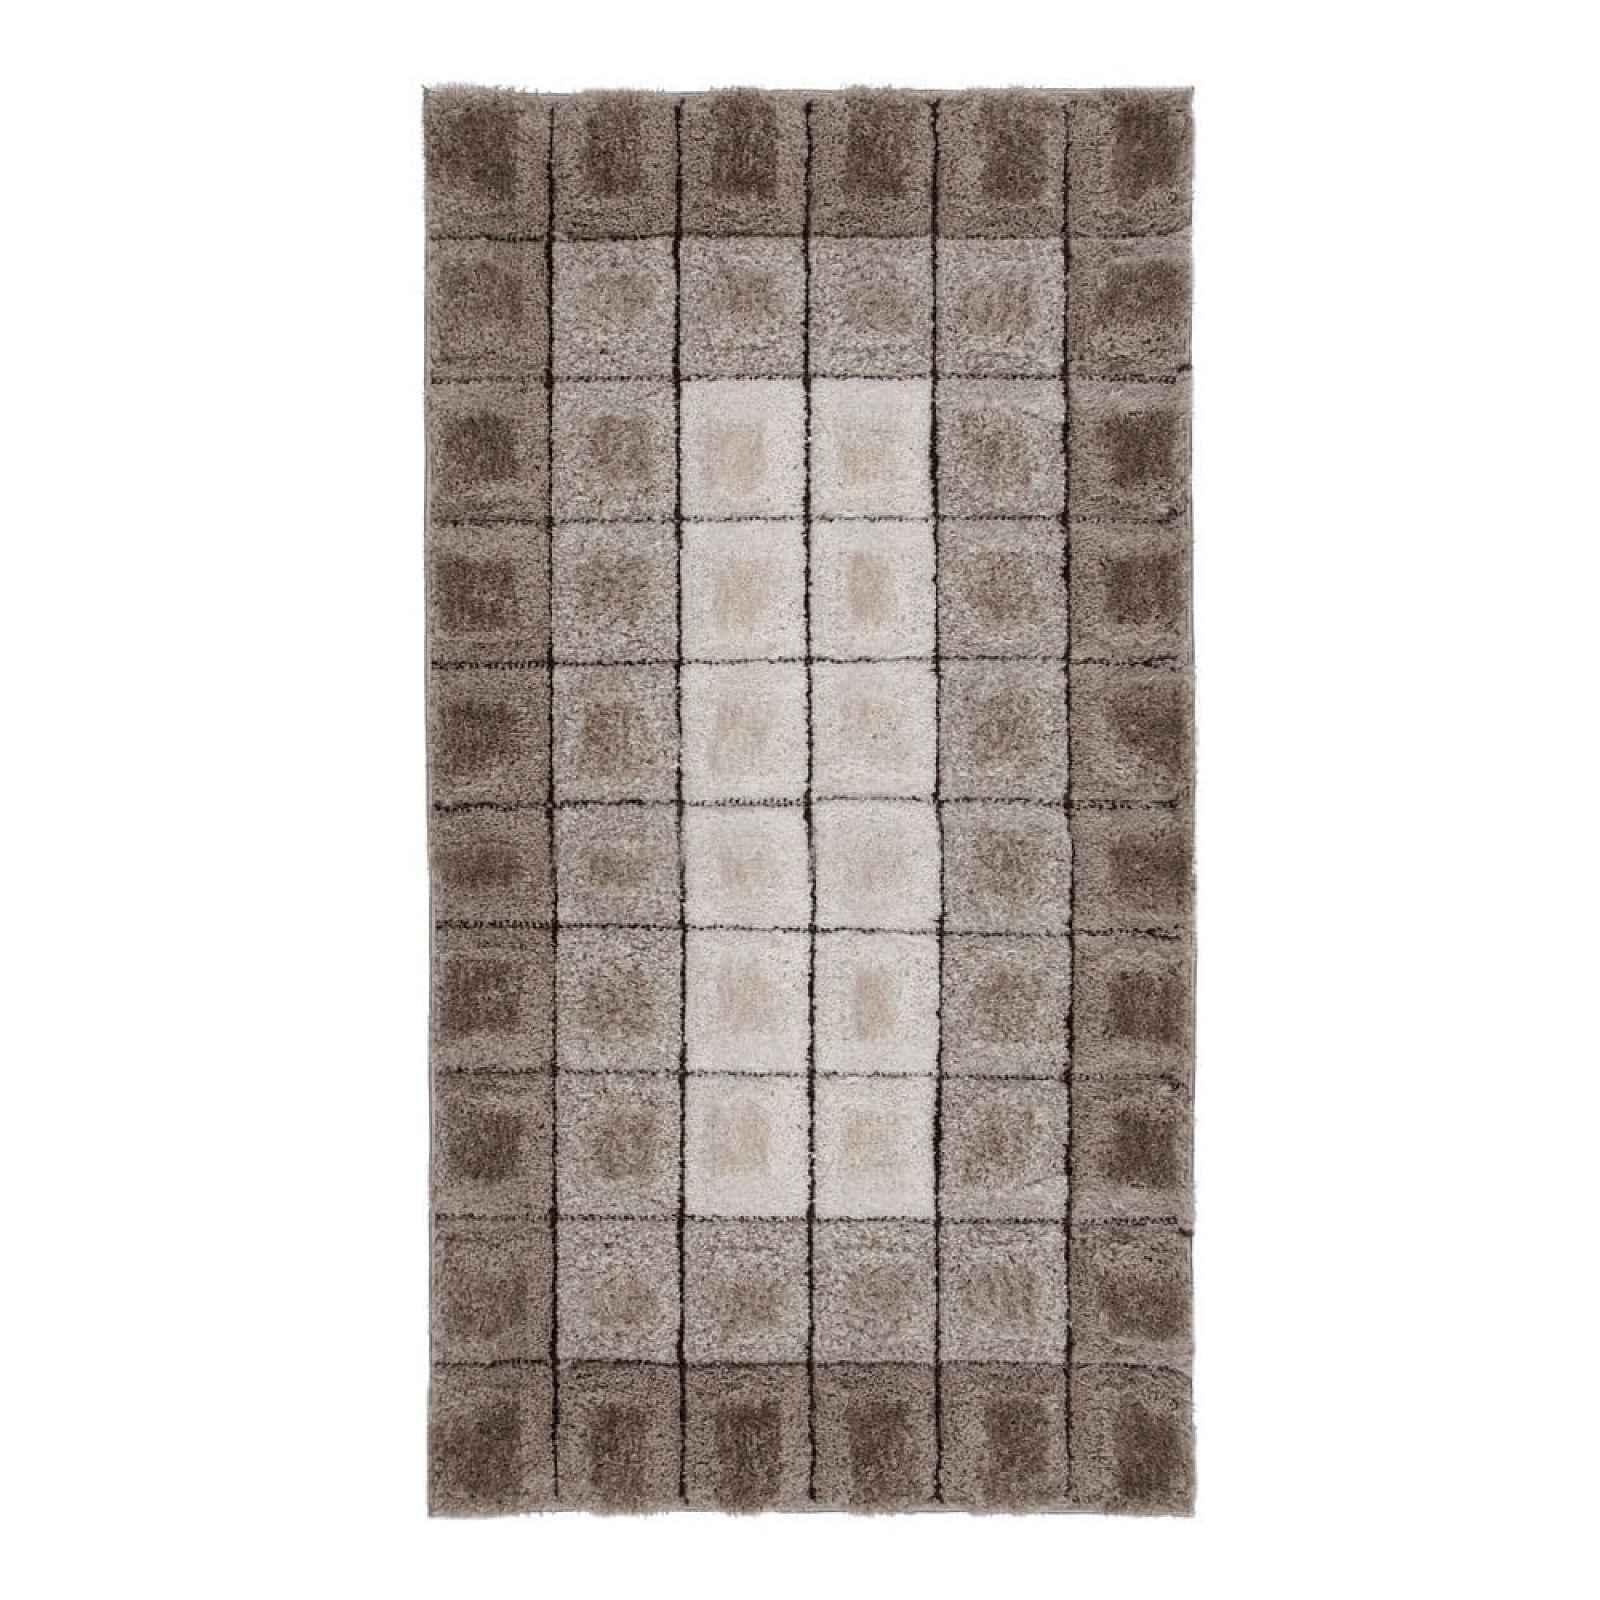 Hnědý koberec Flair Rugs Cube, 120 x 170 cm